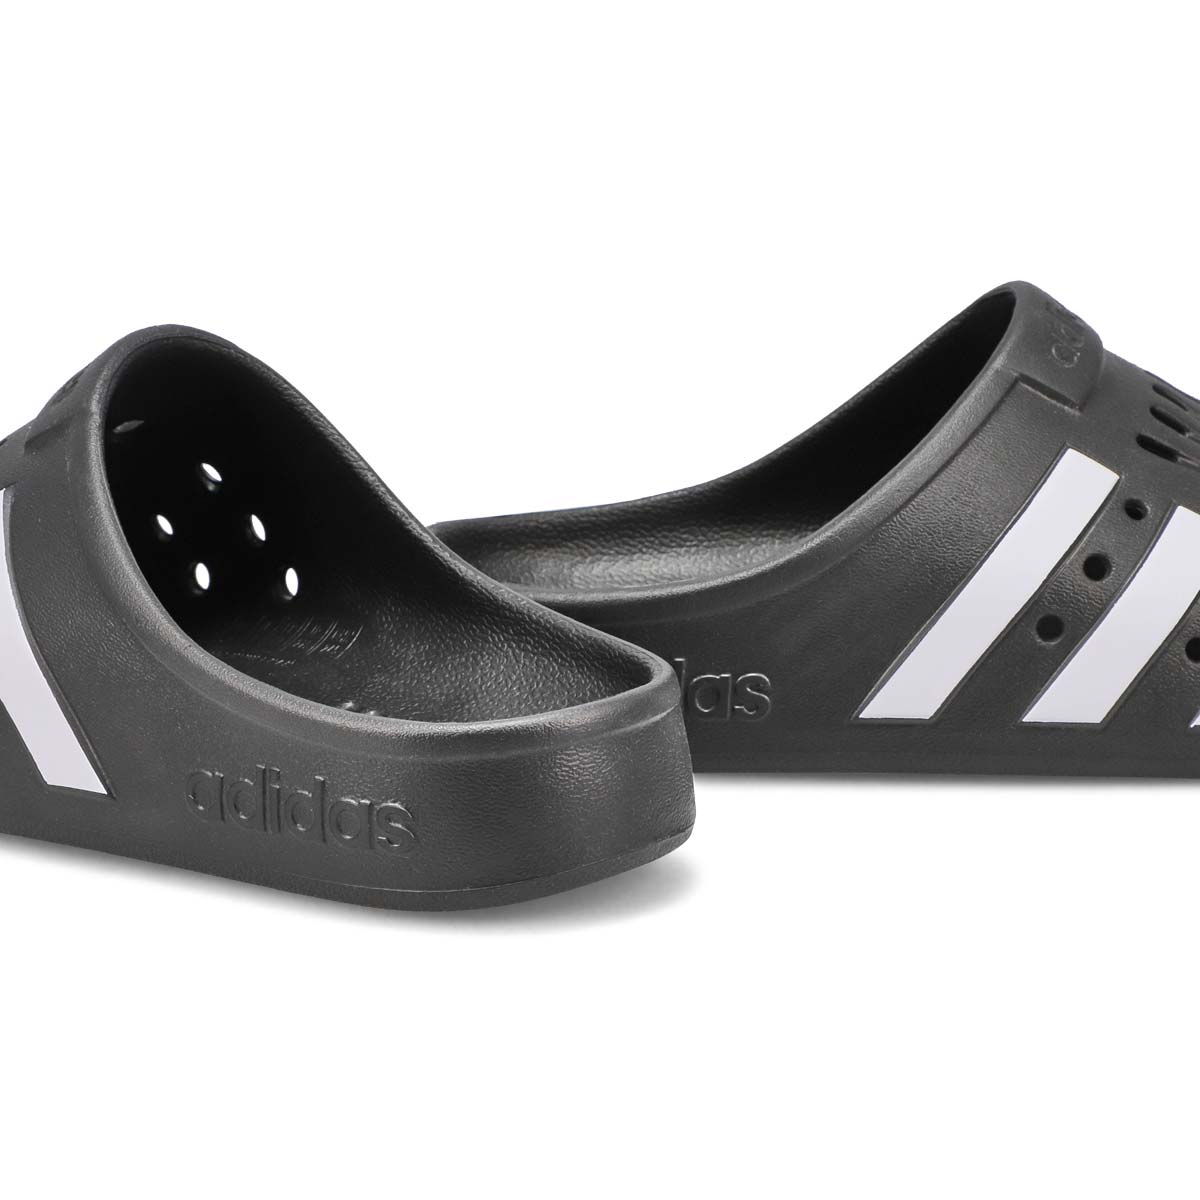 Men's Addilette Clog Slip On Shoe - Black/White